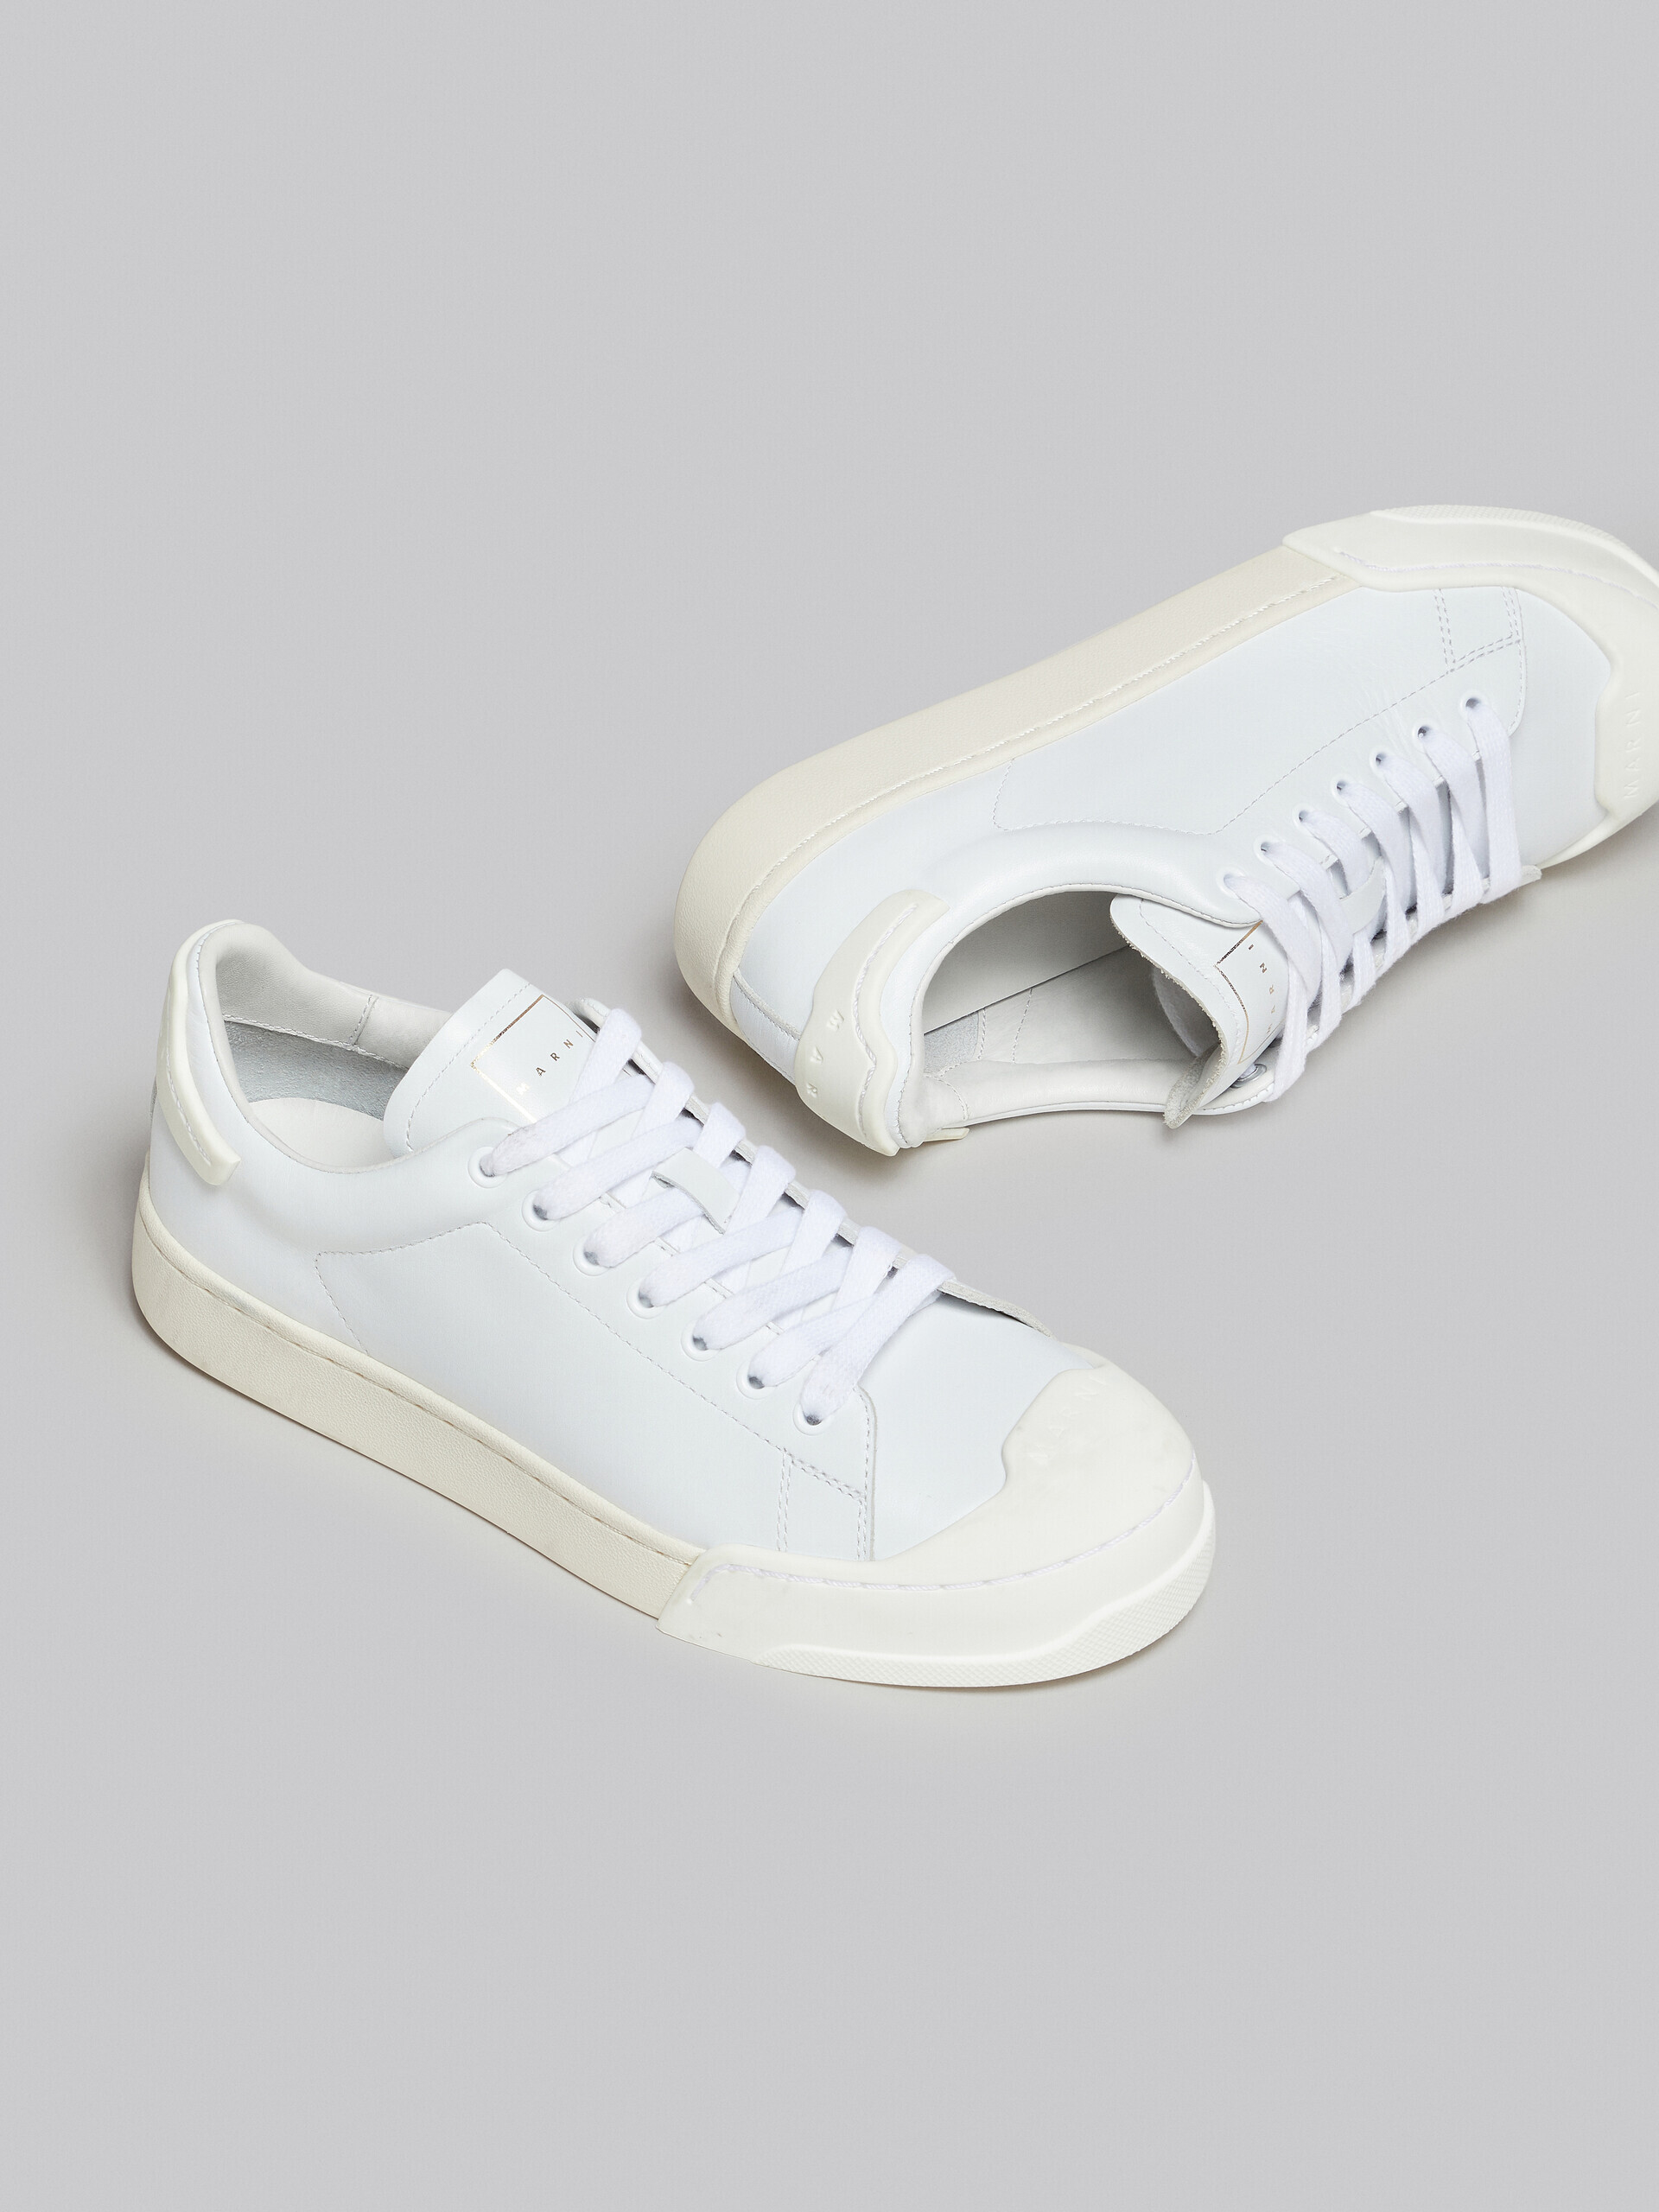 Sneakers Dada Bumper aus weißem Leder - Sneakers - Image 5